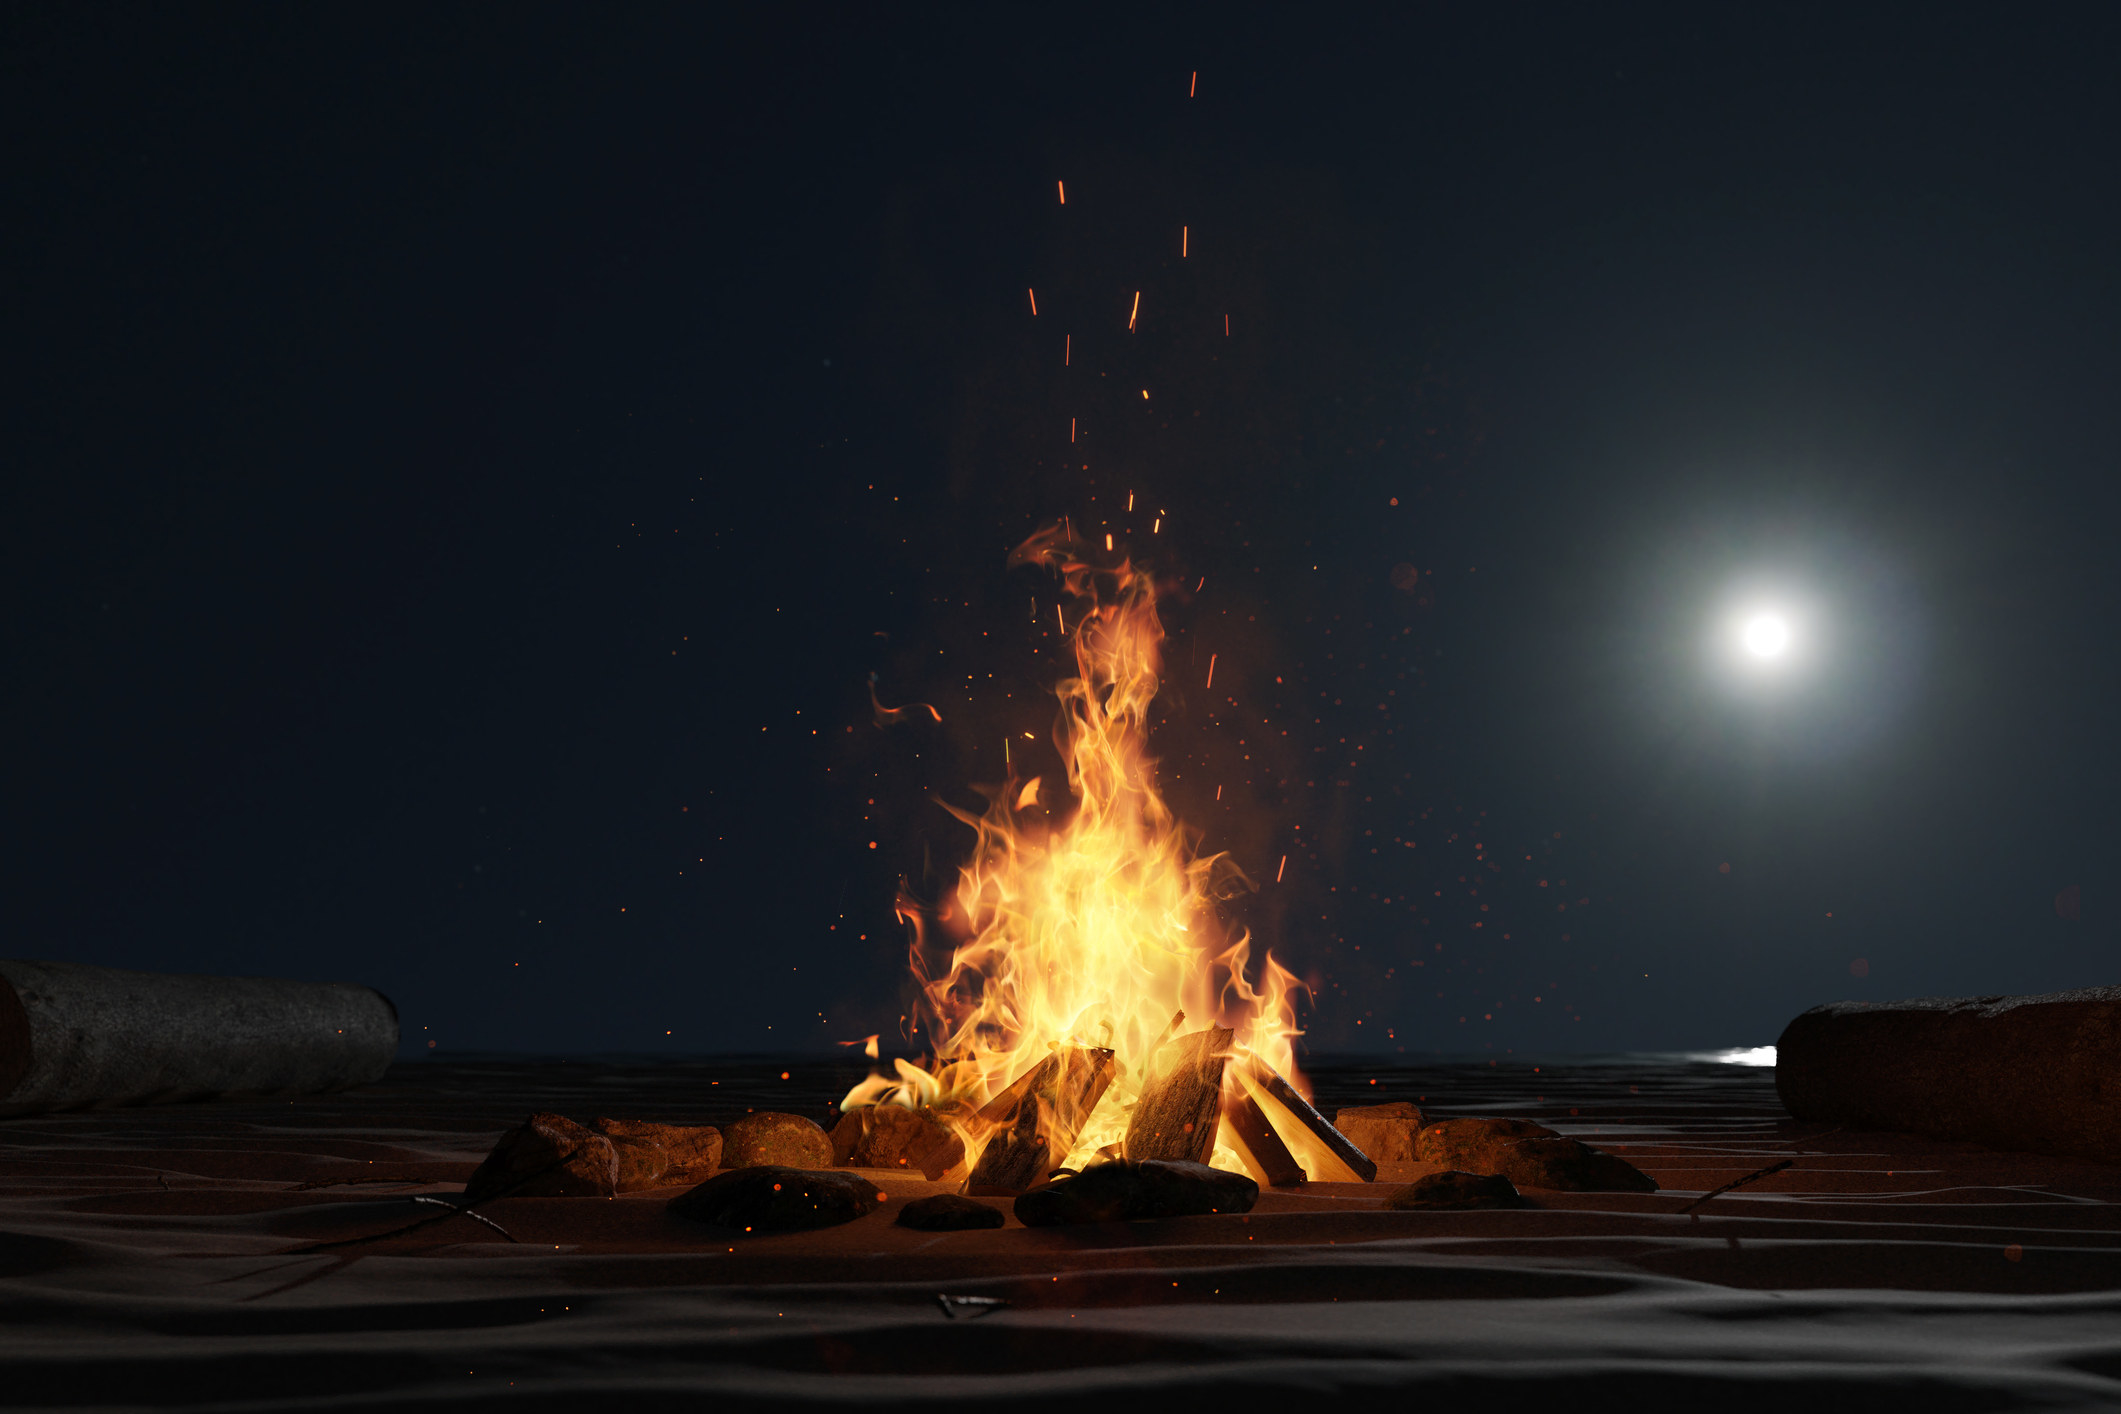 A bonfire burns on the beach